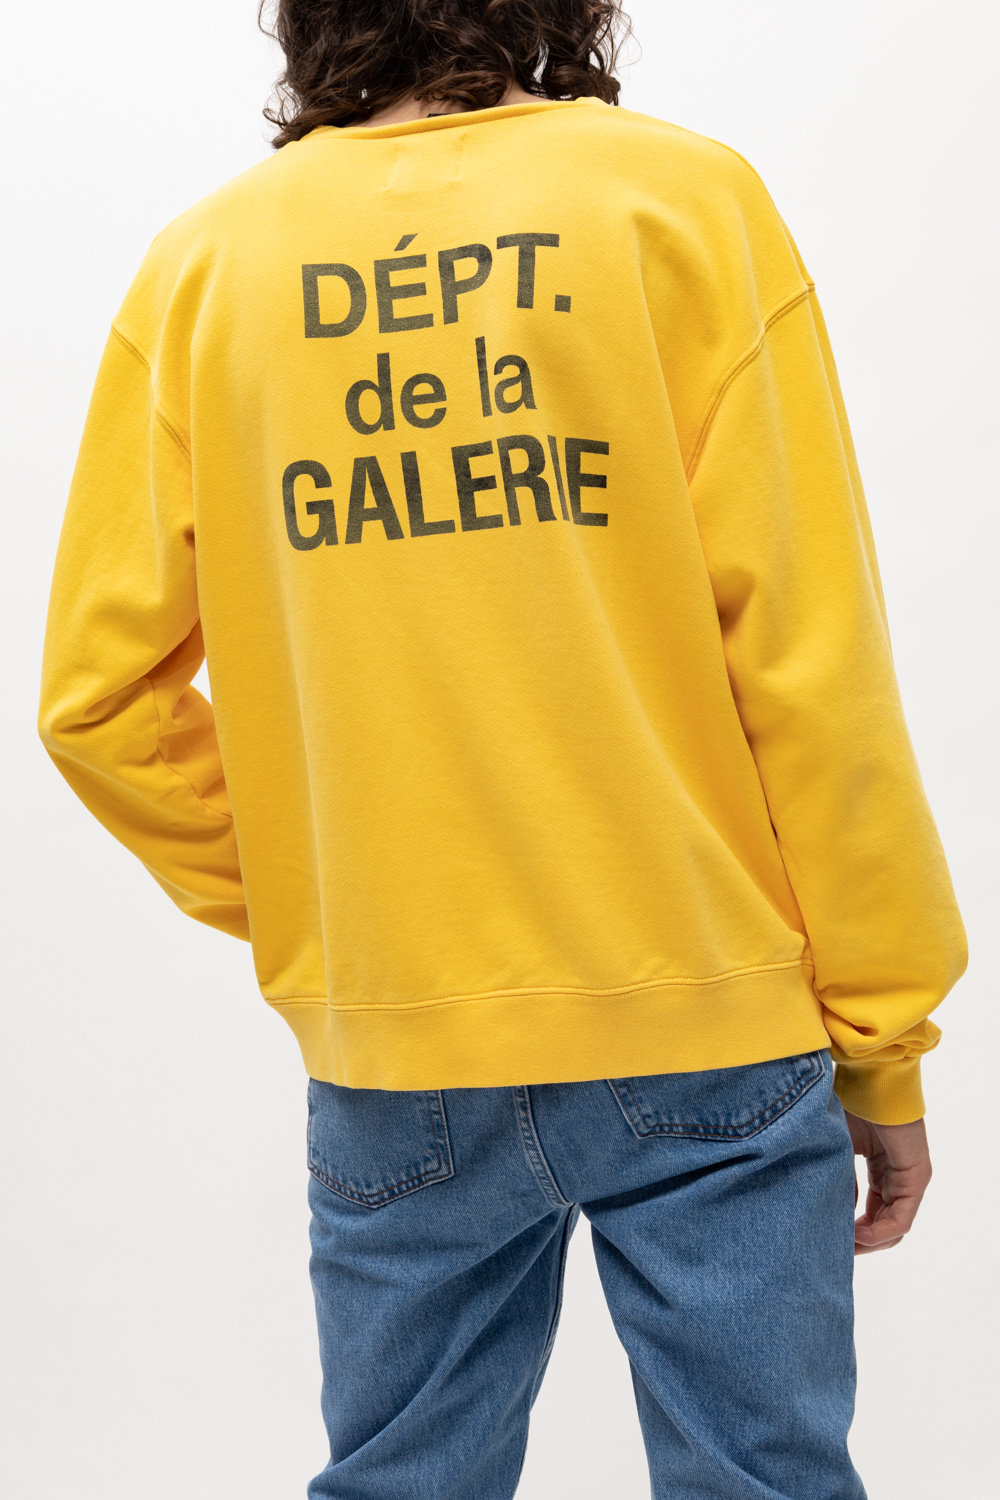 GALLERY DEPT. Sweatshirt with logo